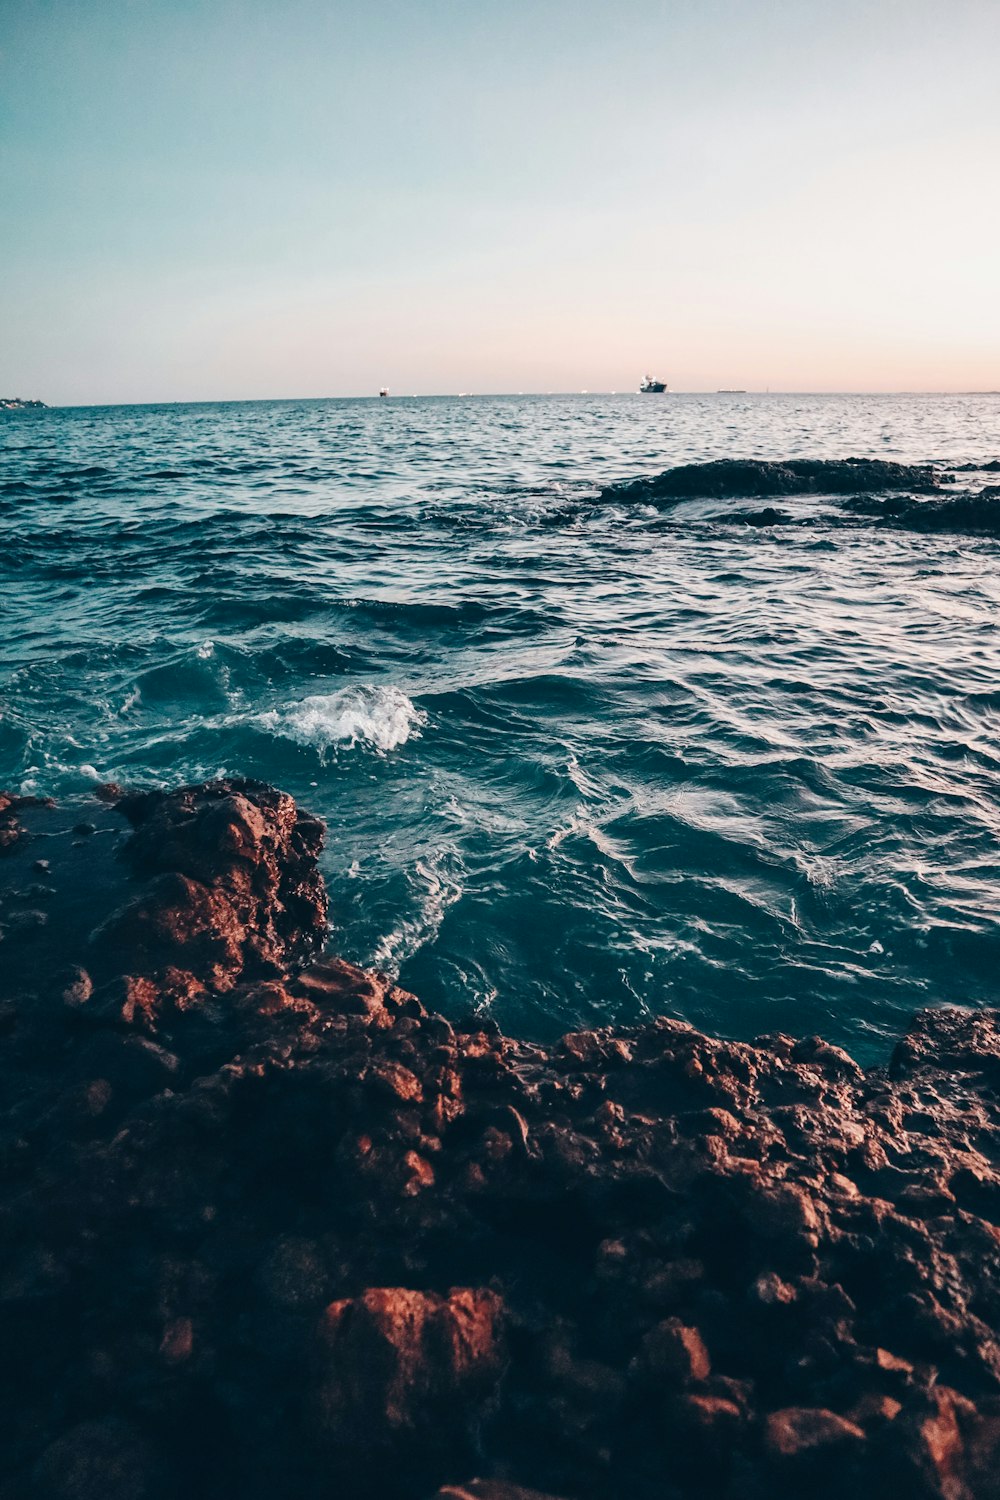 Les vagues de l’océan s’écrasent sur les roches brunes pendant la journée